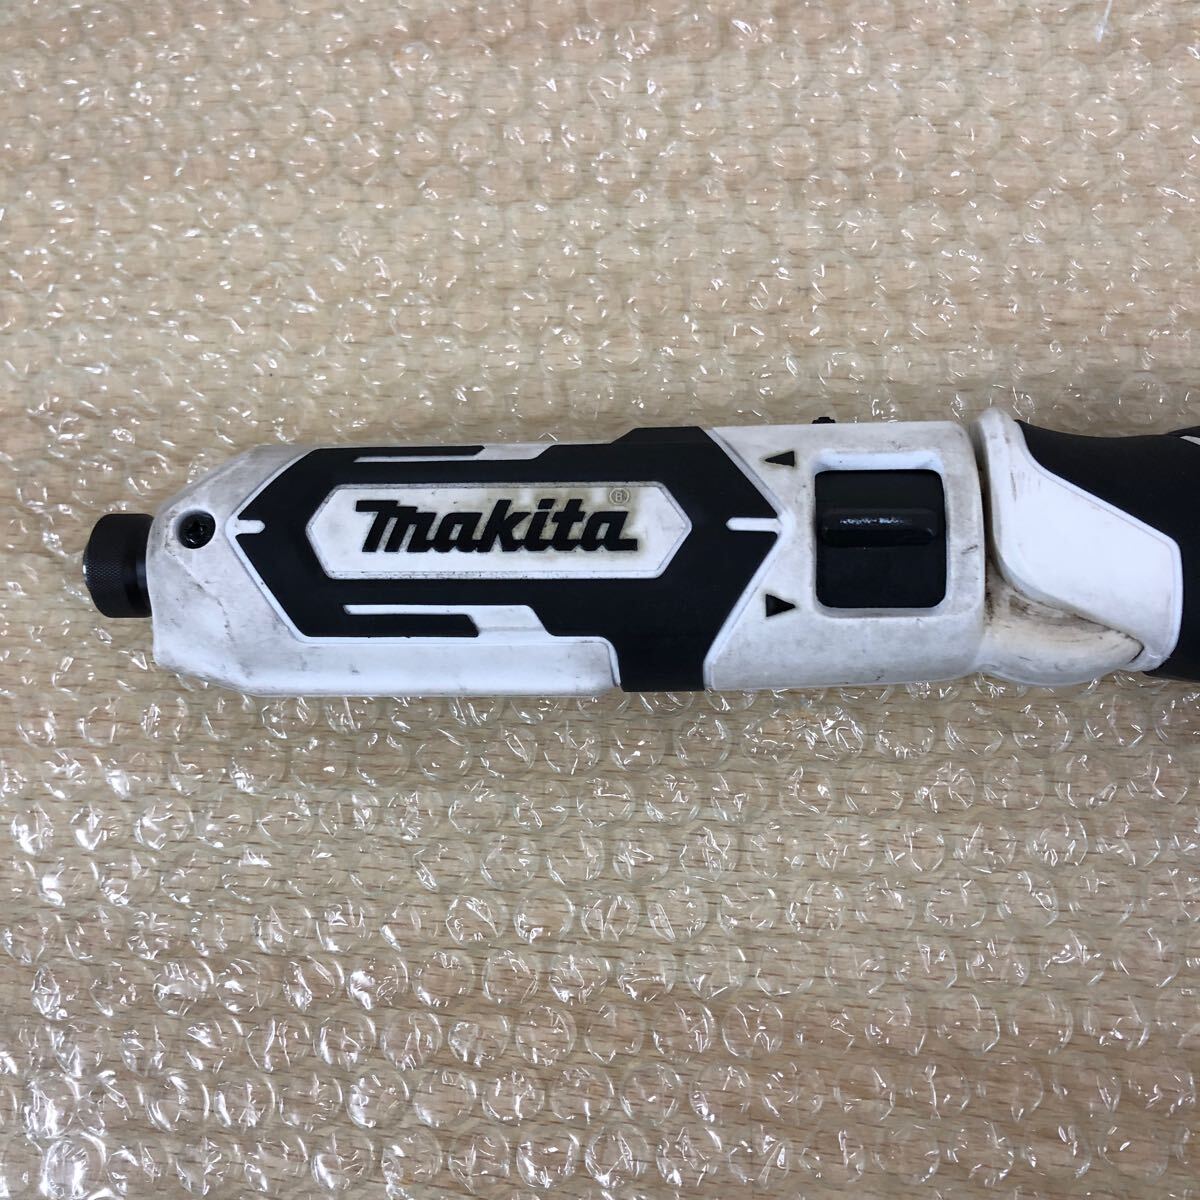 中古品 マキタ makita 充電式ペンインパクトドライバ 7.2V TD022D バッテリー付き インパクトドライバ・電動工具の画像2